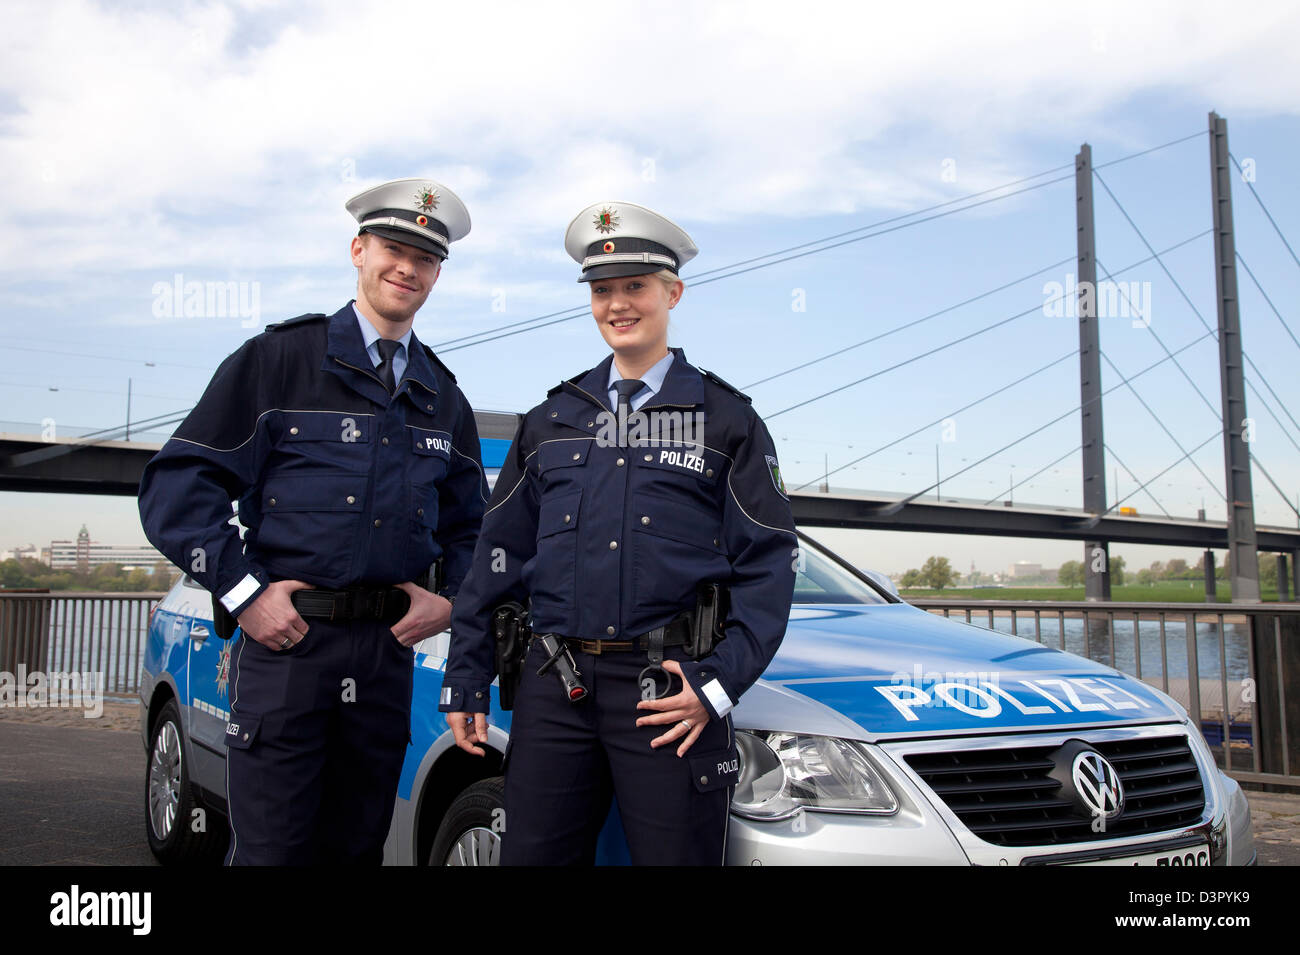 Duesseldorf, Germania, due agenti di polizia con la nuova uniforme blu Foto Stock